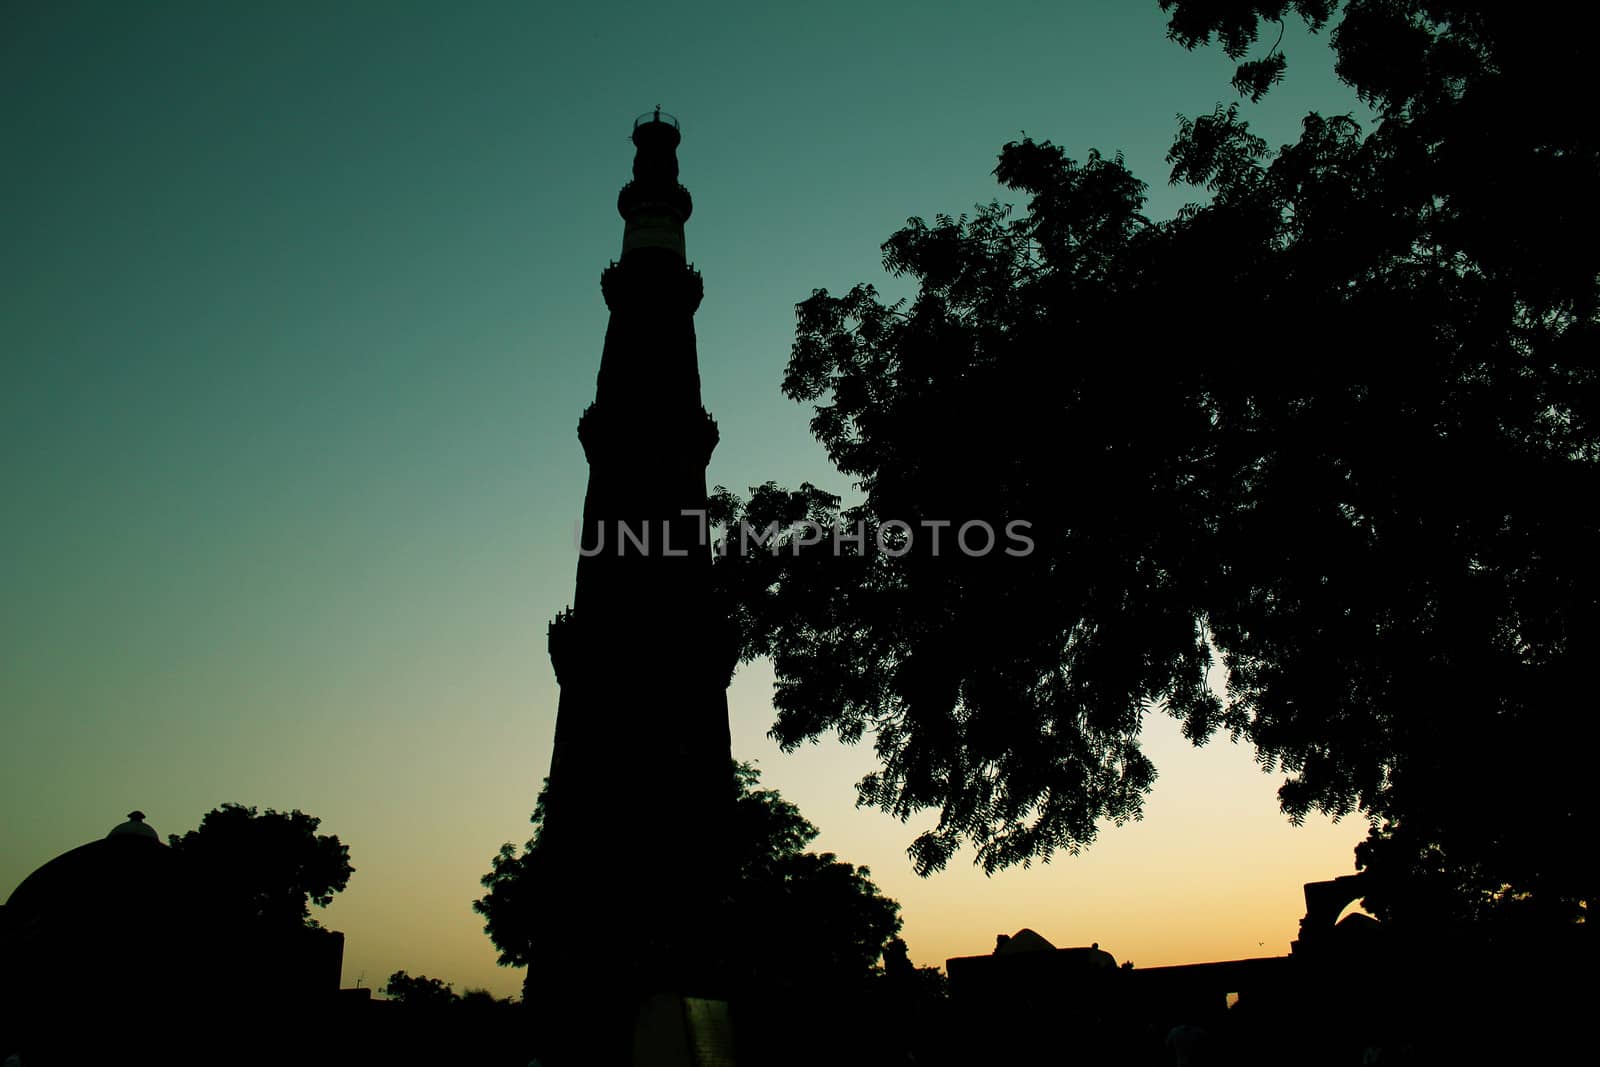 qutub minar silhouette in retro color